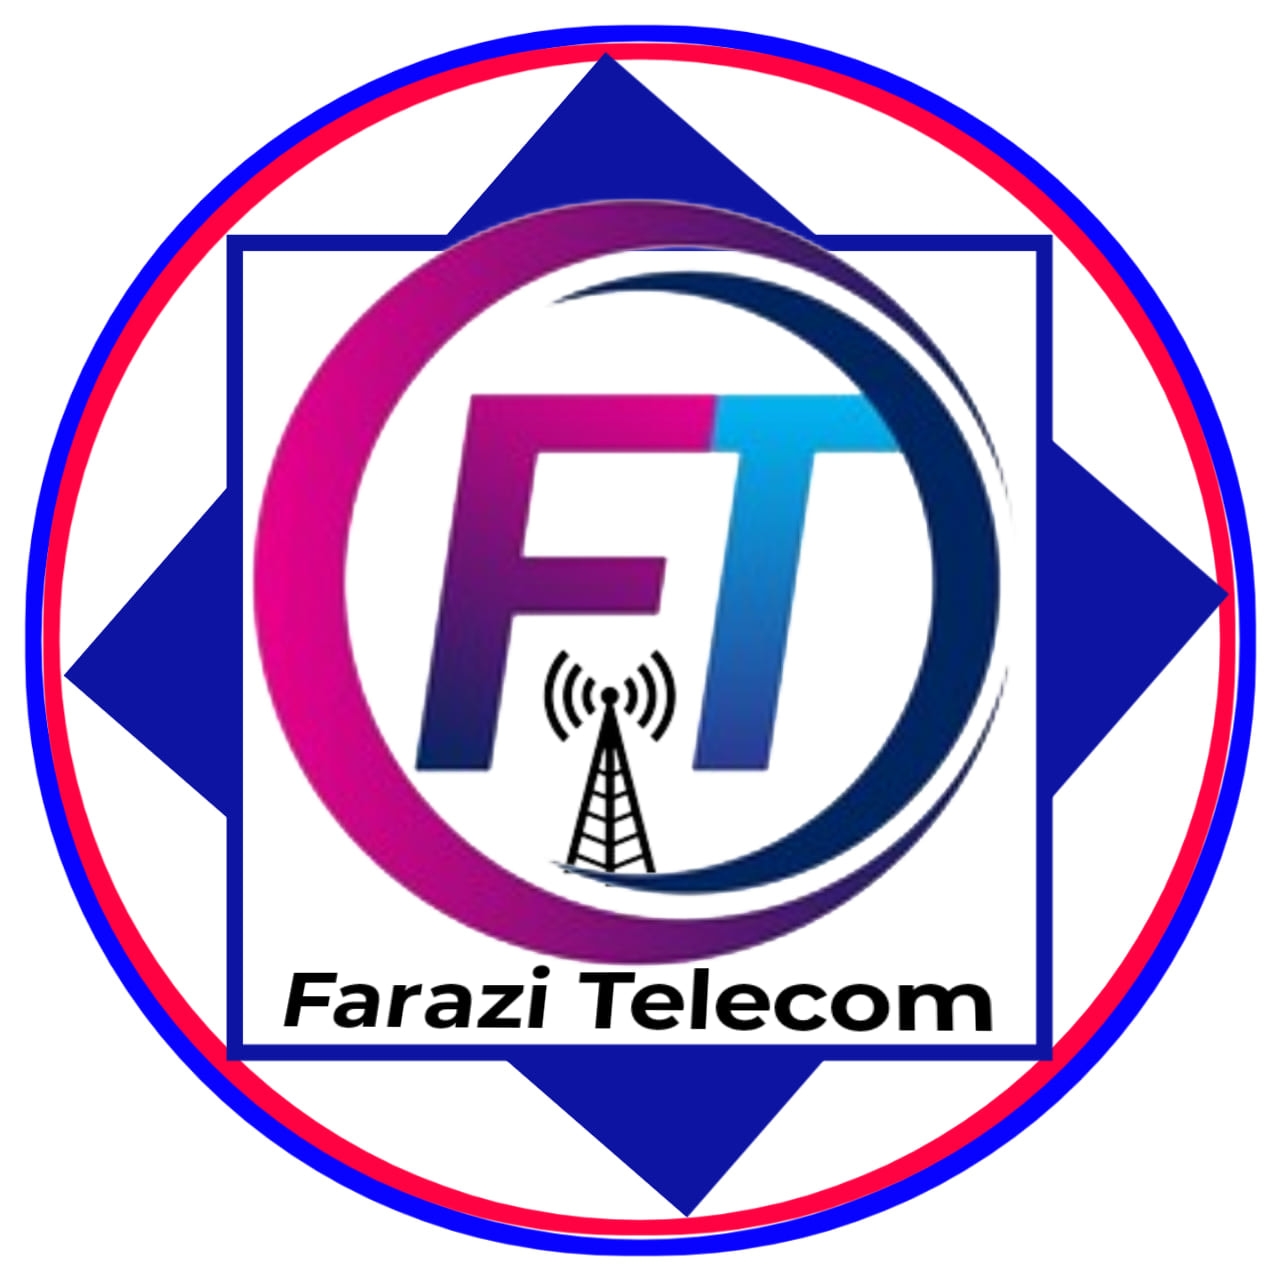 Farazi Telecom